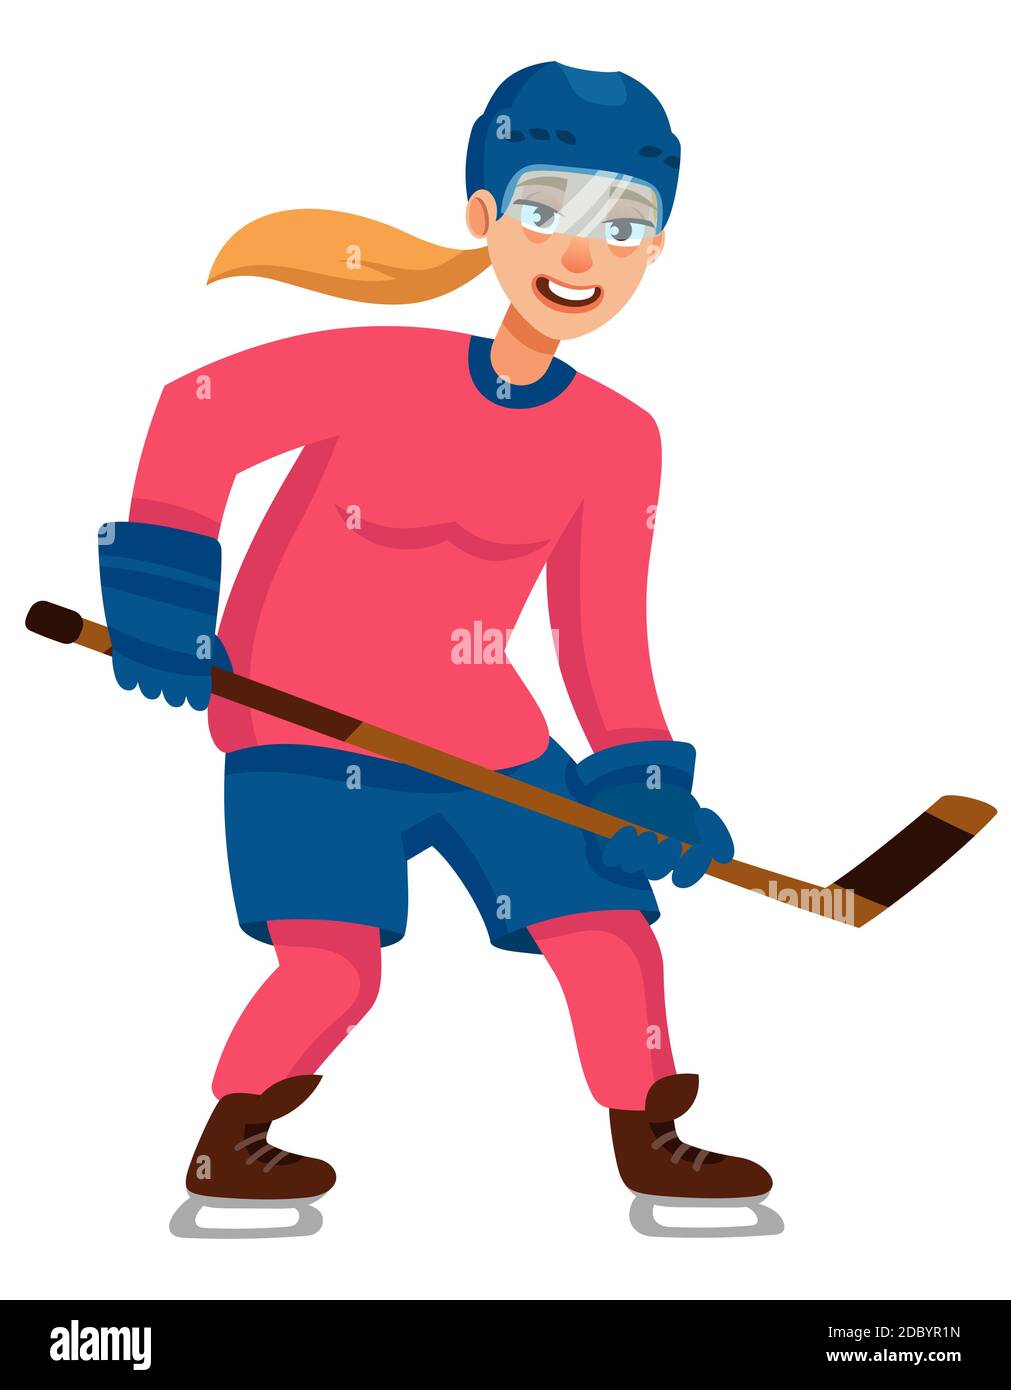 Joueur de hockey en position d'attaque. Personnage féminin de style dessin animé. Illustration de Vecteur